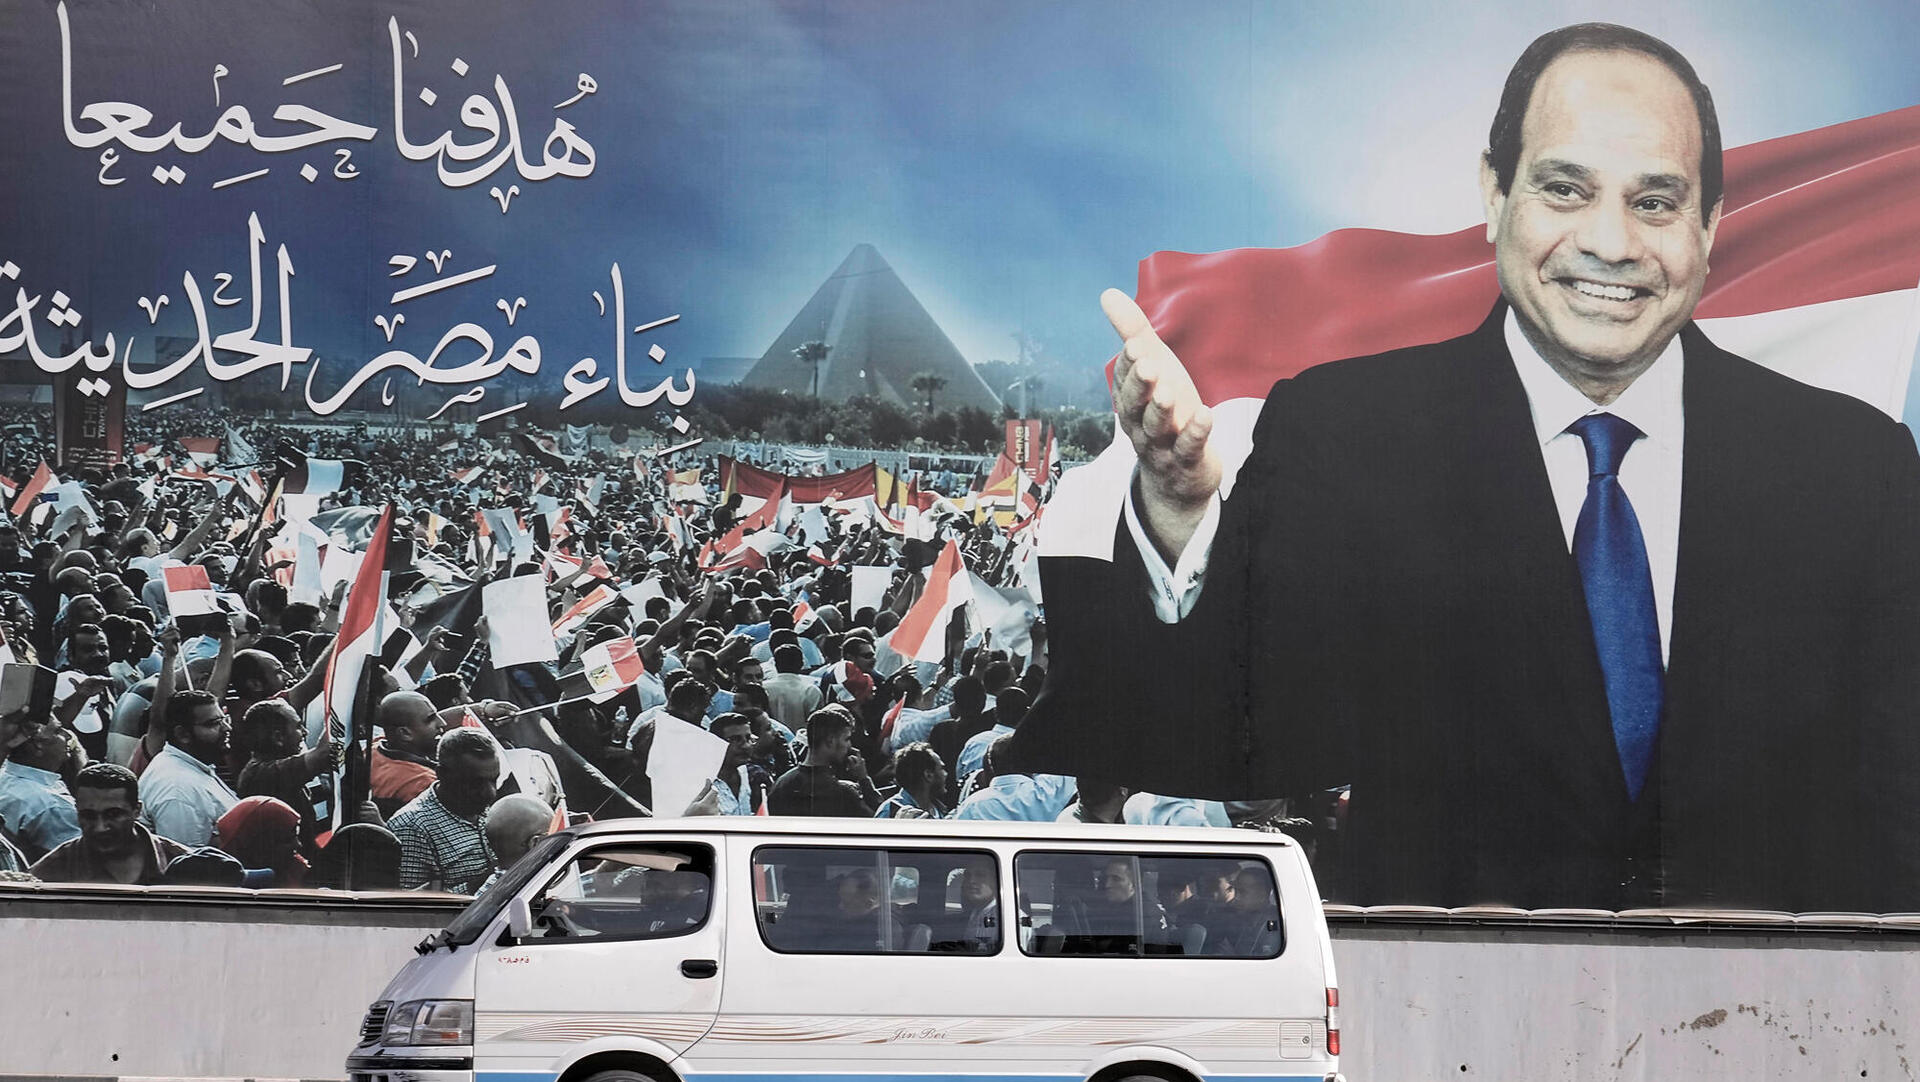 עבד אל פתאח א סיסי כרזת תמיכה ב נשיא א־סיסי ב קהיר בחירות לנשיא מצרים